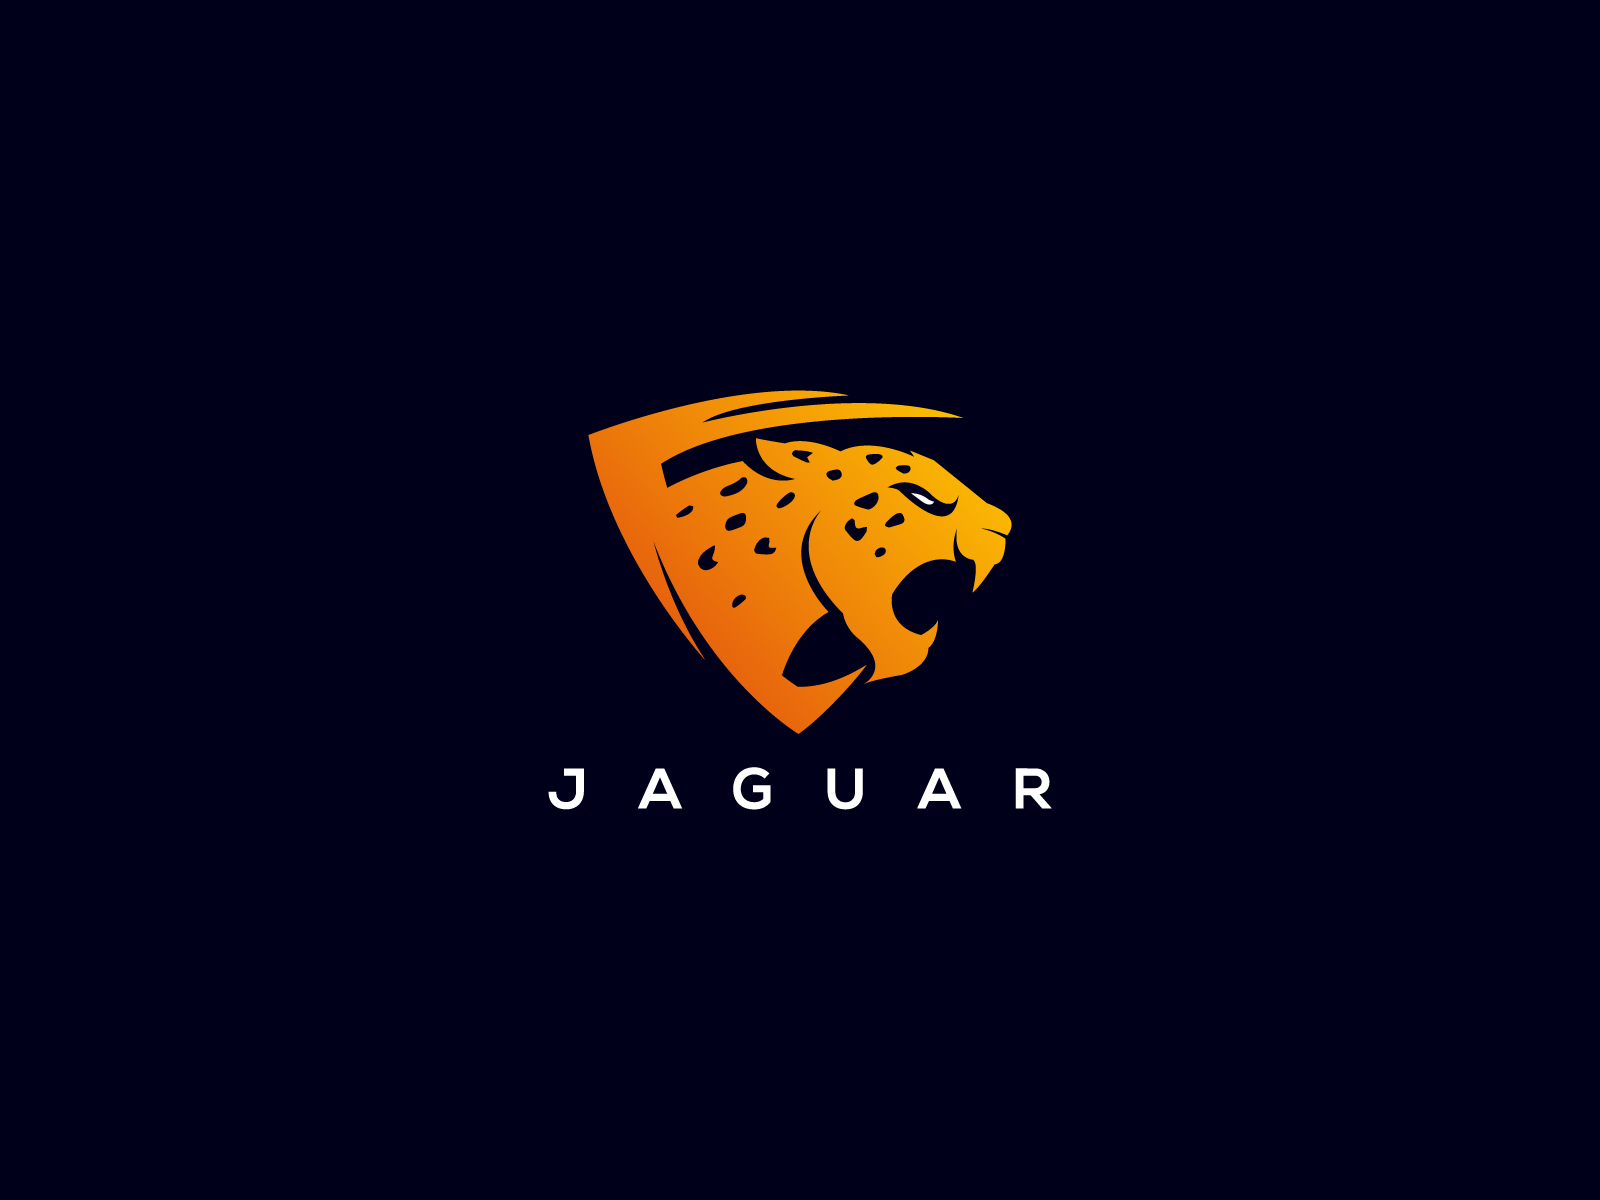 Jaguar logo Cut Out Stock Images & Pictures - Alamy